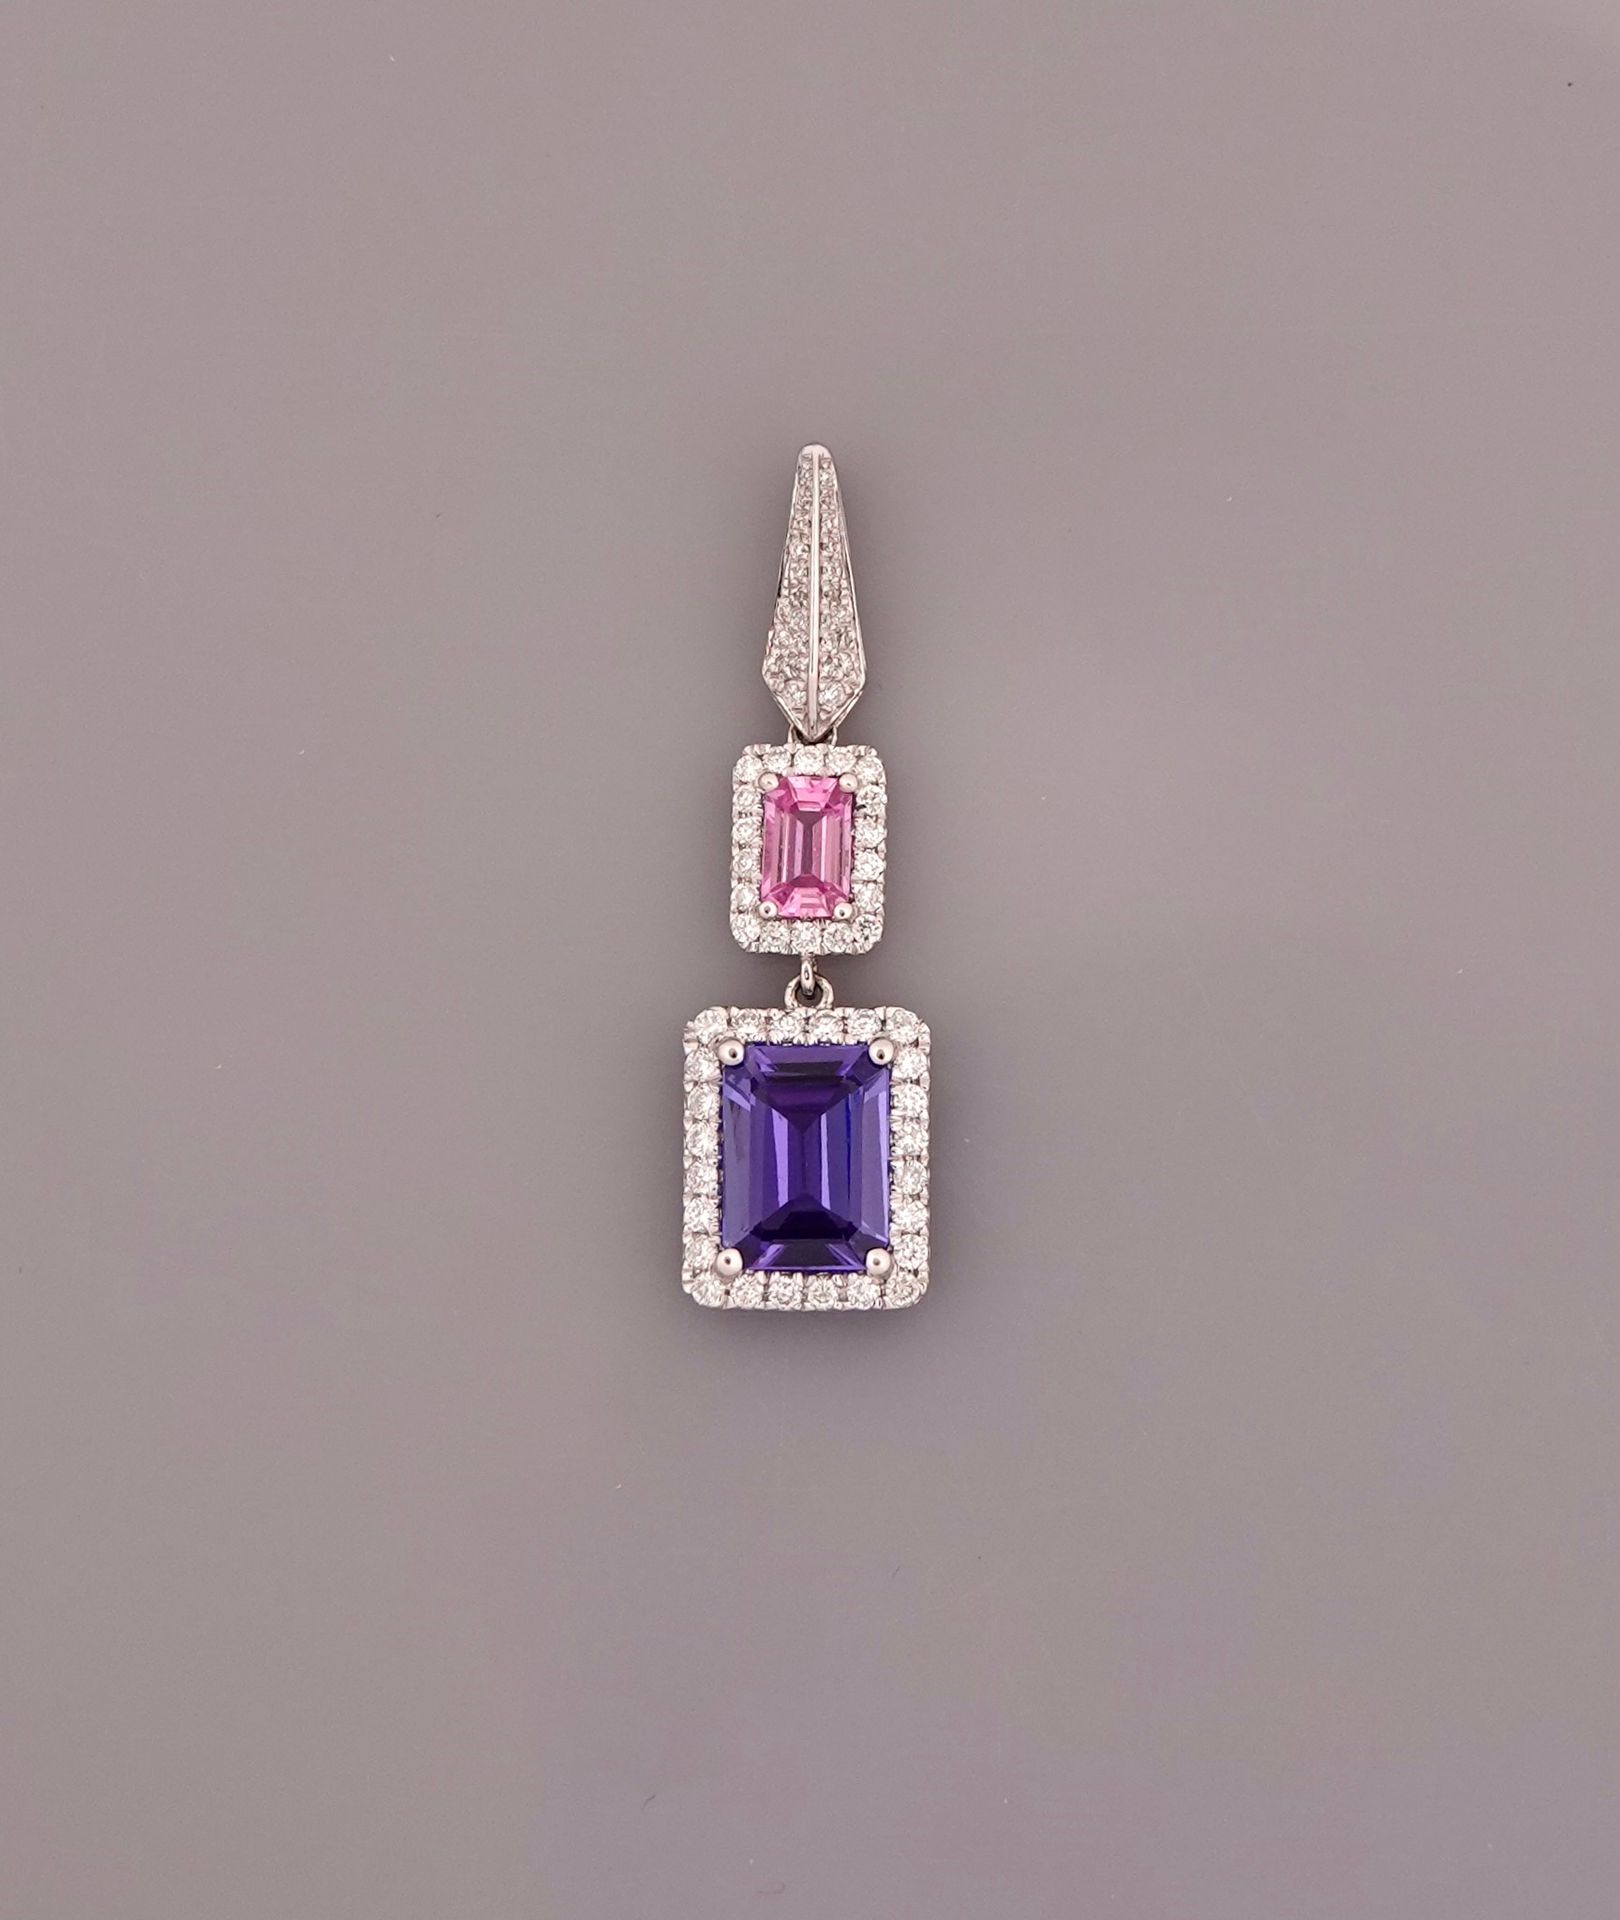 Null 白金吊坠，750毫米，包镶钻石，有一颗粉色蓝宝石，周围镶有钻石，重约1.50克拉的坦桑石，长2厘米，毛重1.85克。